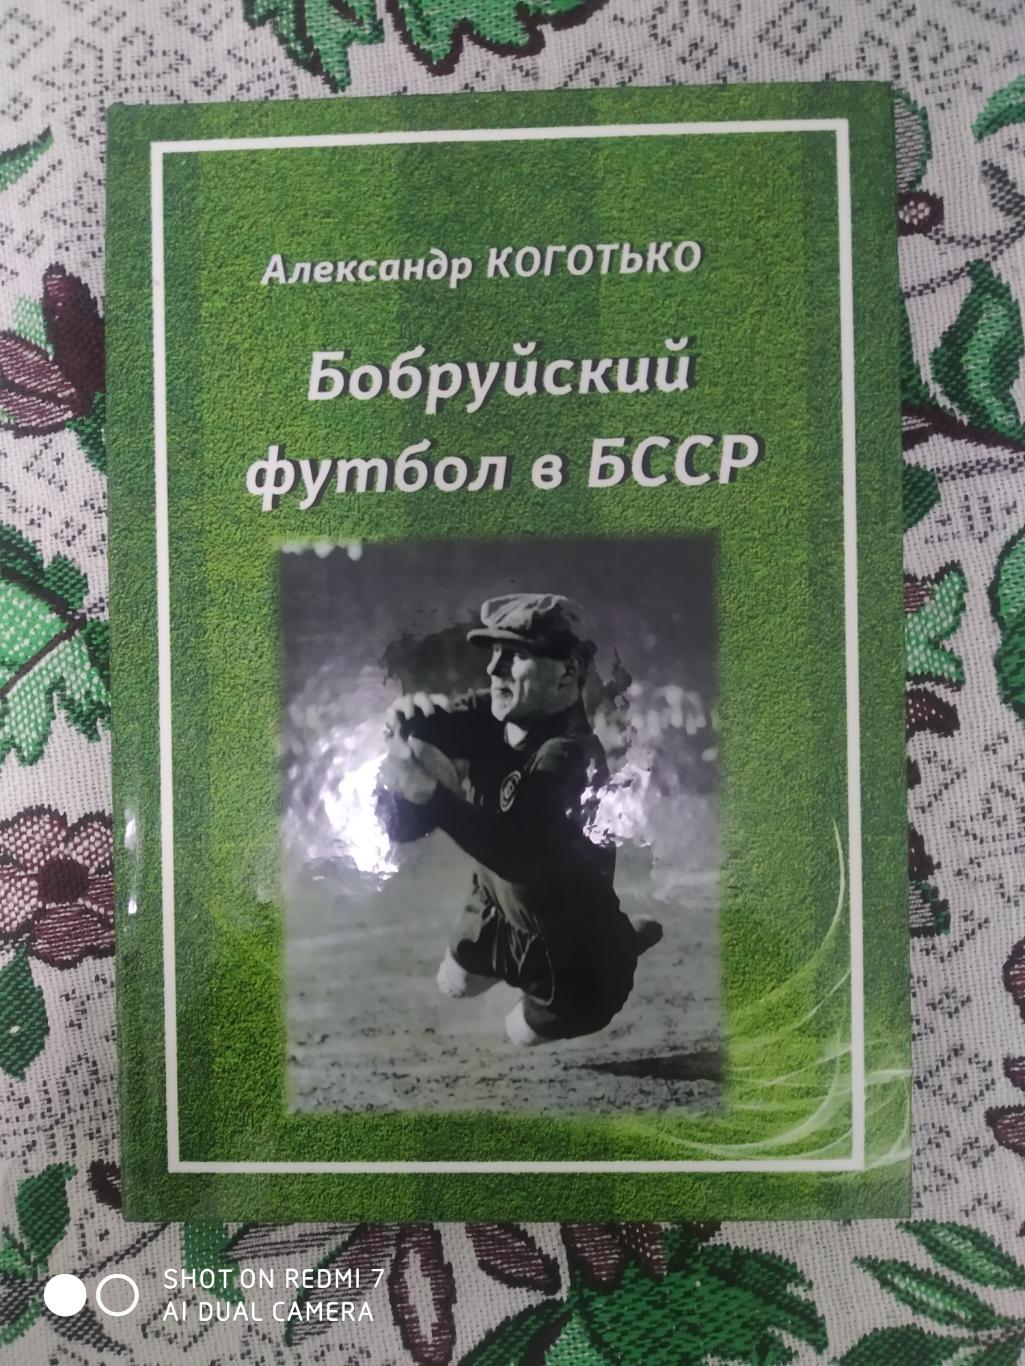 А. Коготько: Бобруйский футбол в БССР